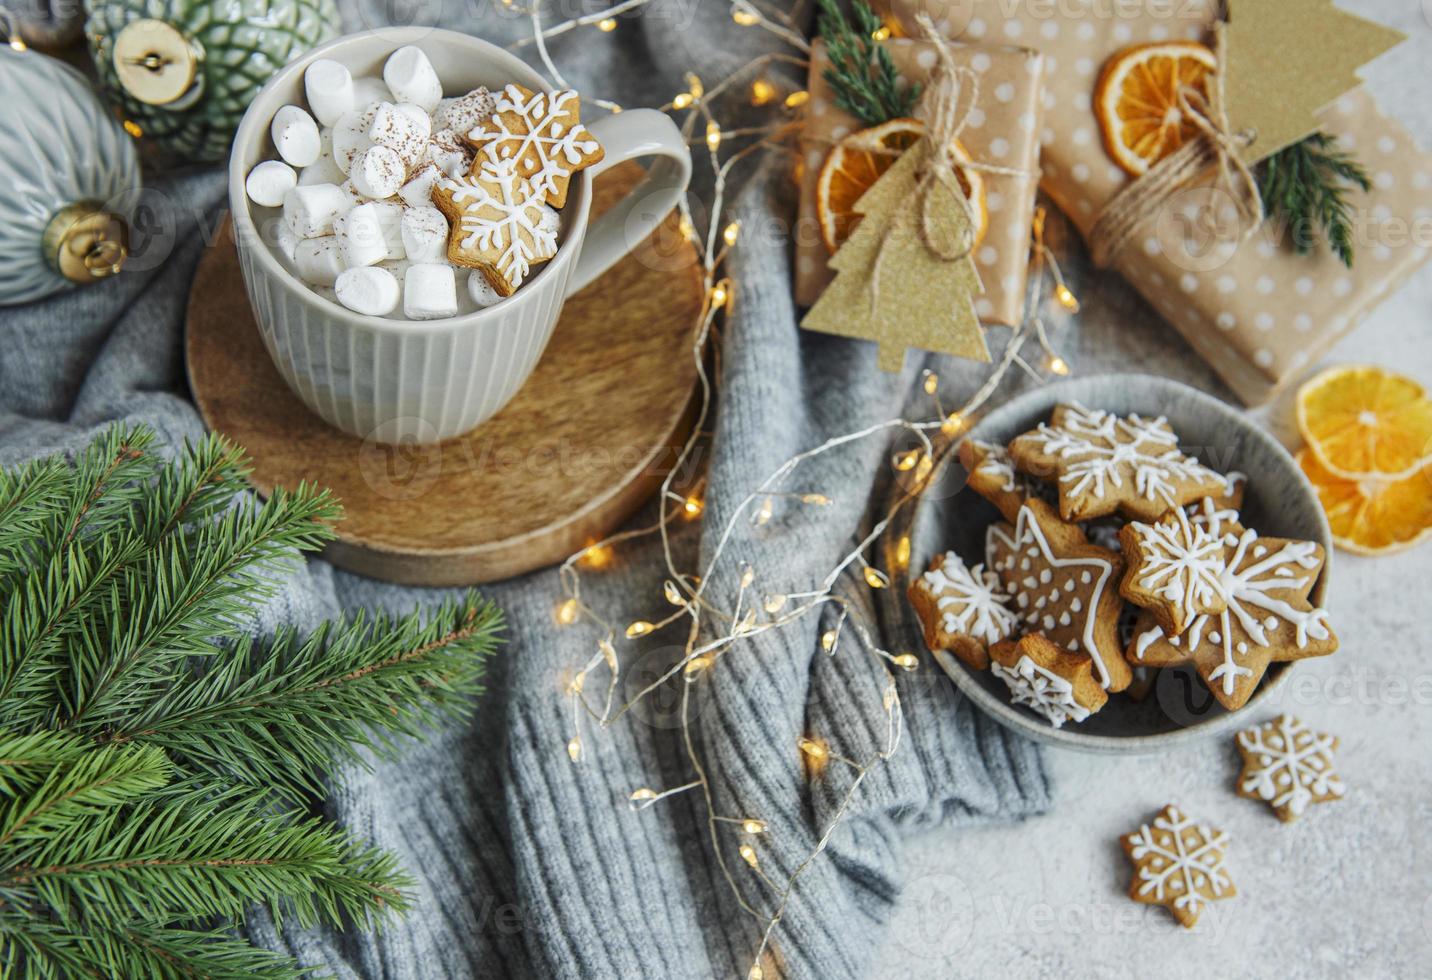 cioccolata calda con marshmallow, bevanda natalizia calda e accogliente foto